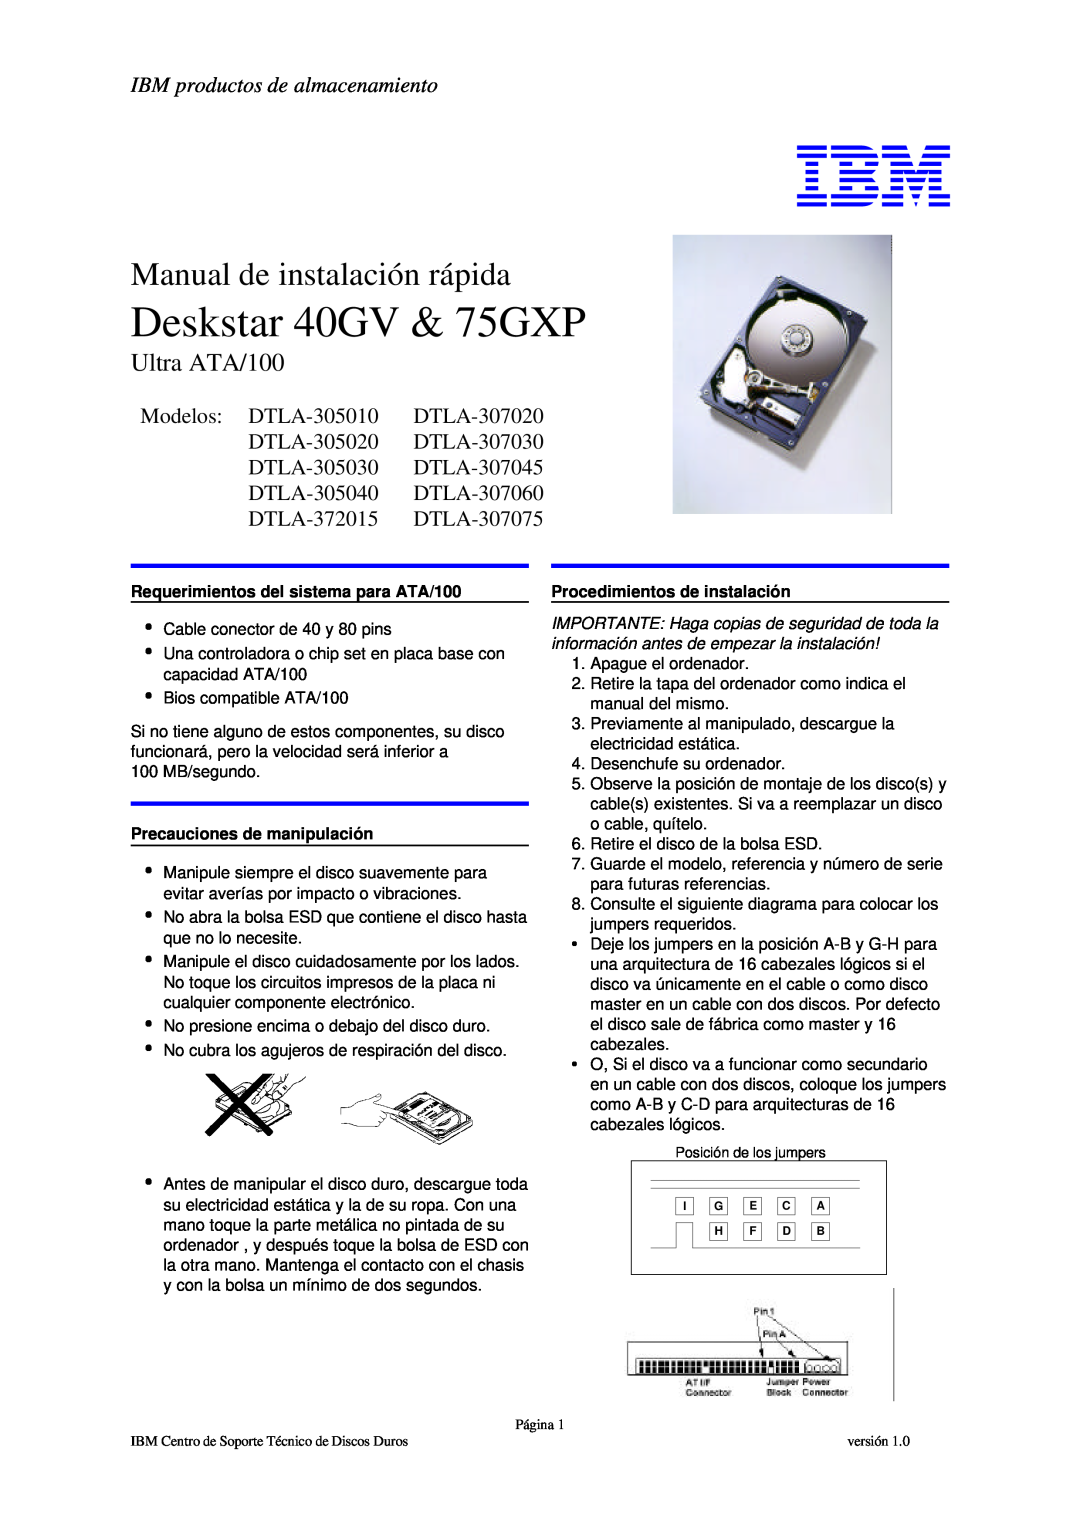 IBM DTLA-305020 manual IBM productos de almacenamiento, Deskstar 40GV & 75GXP, Manual de instalación rápida, Ultra ATA/100 